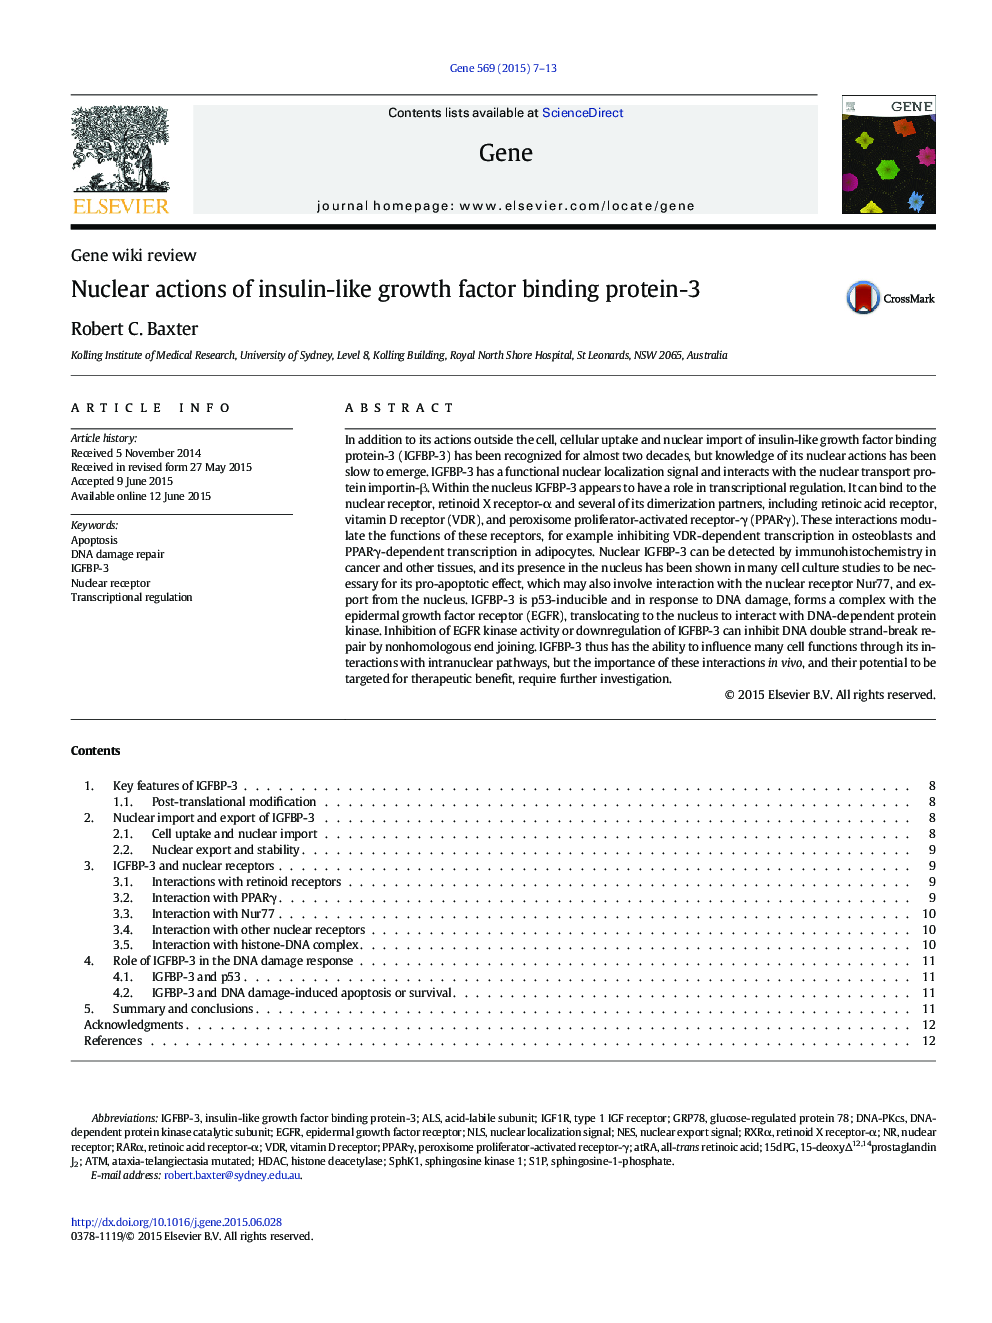 اقدامات هسته ای پروتئین اتصال دهنده عامل رشد انسولین-3 